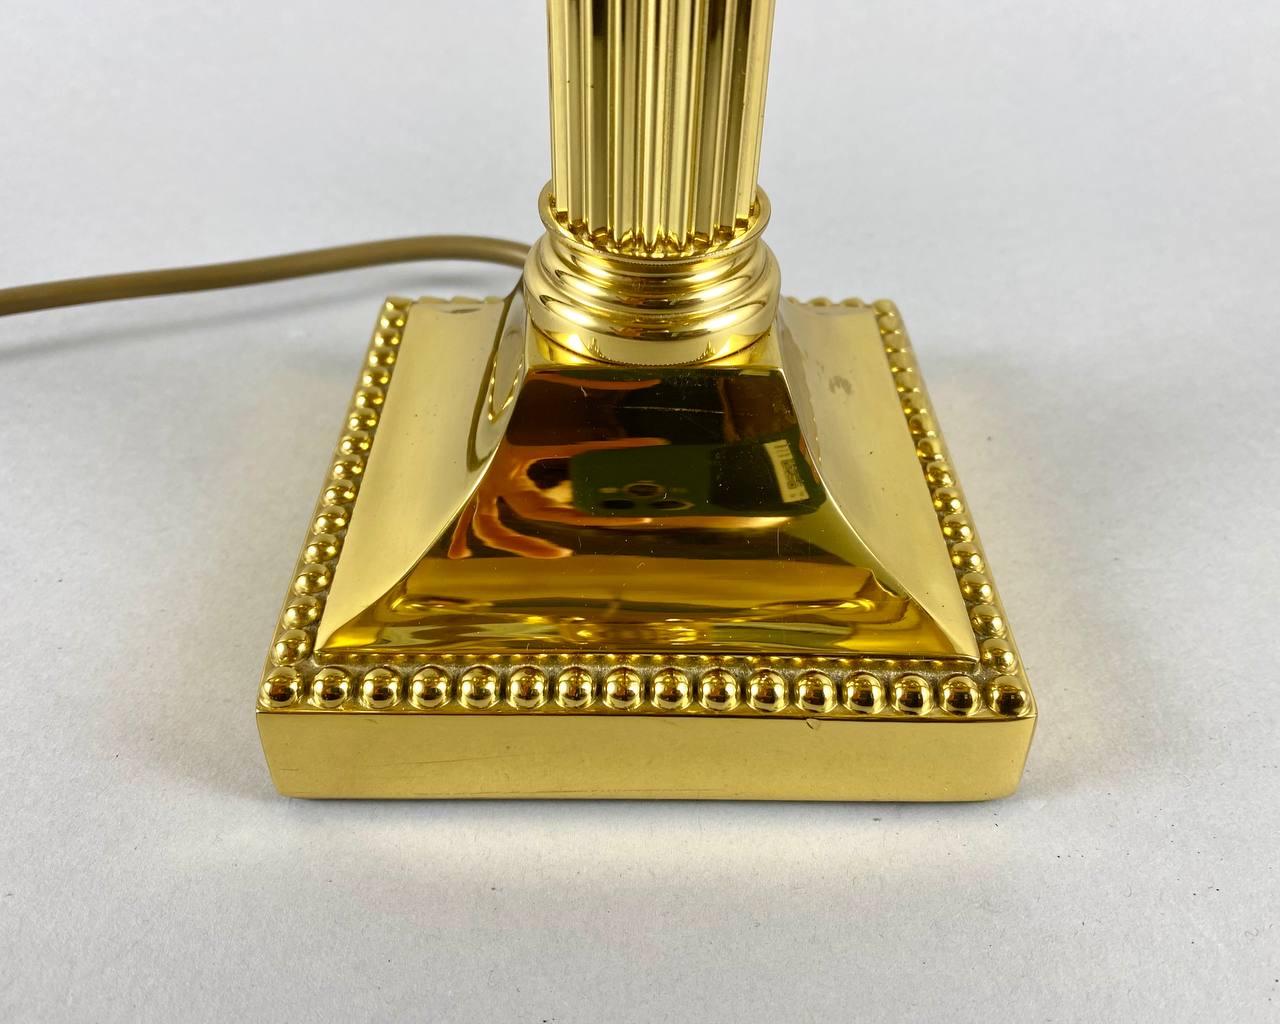 La luxueuse lampe de table est fabriquée dans un style classique, le pied de la lampe est en laiton ciselé et doré, tout comme l'abat-jour avec quatre appliques.

 La base en forme de piédestal se transformant en colonne. Le sommet de la lampe est